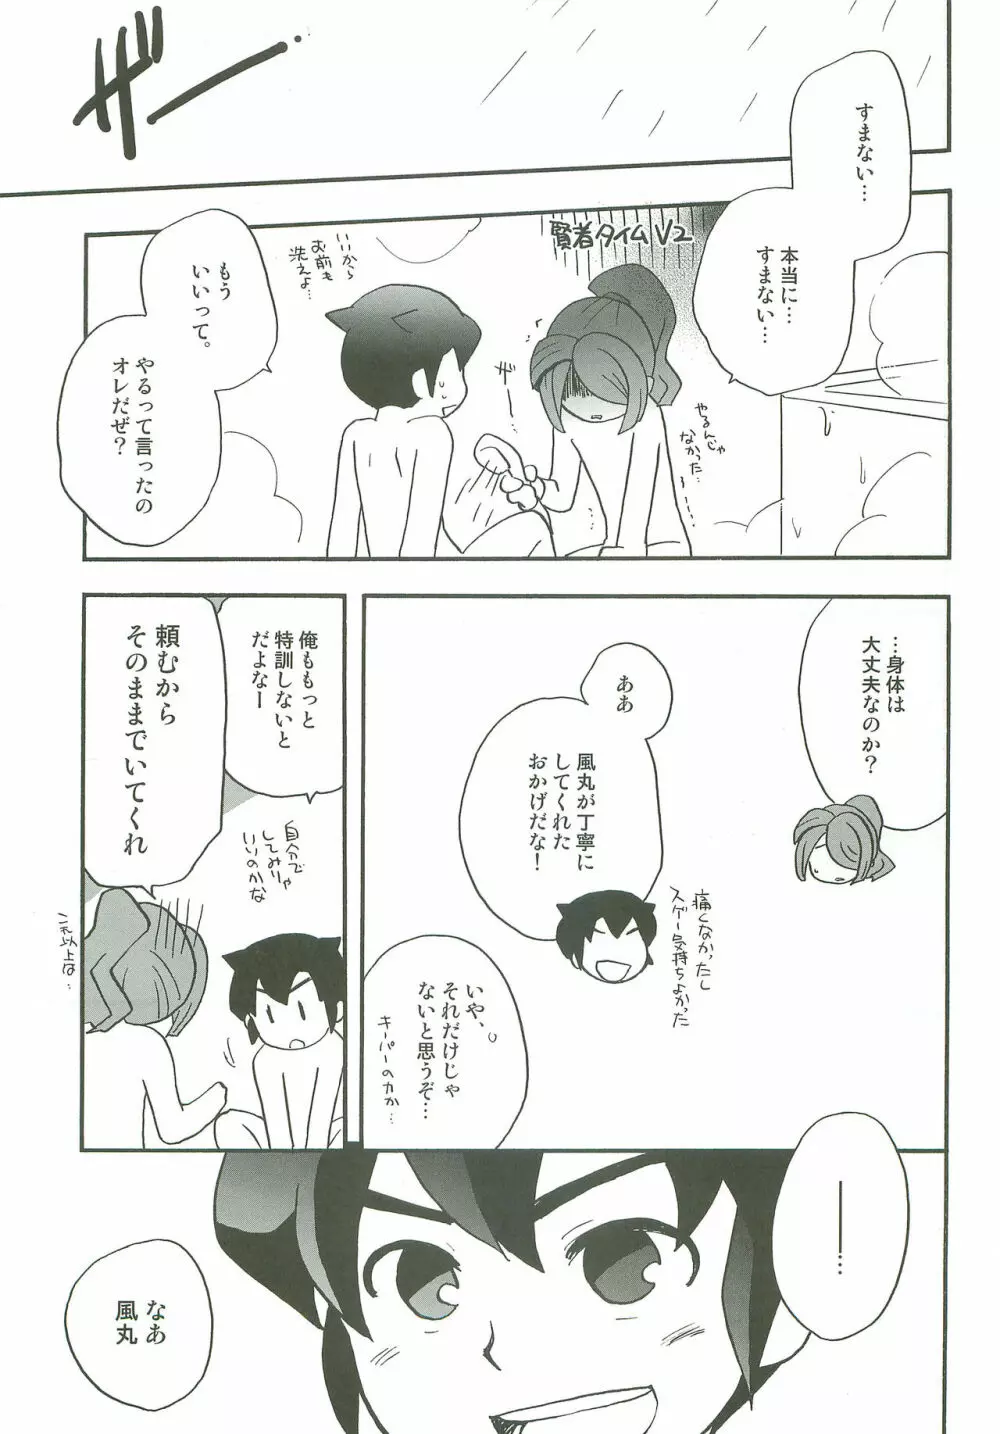 タチ食い!side円風円 - page26